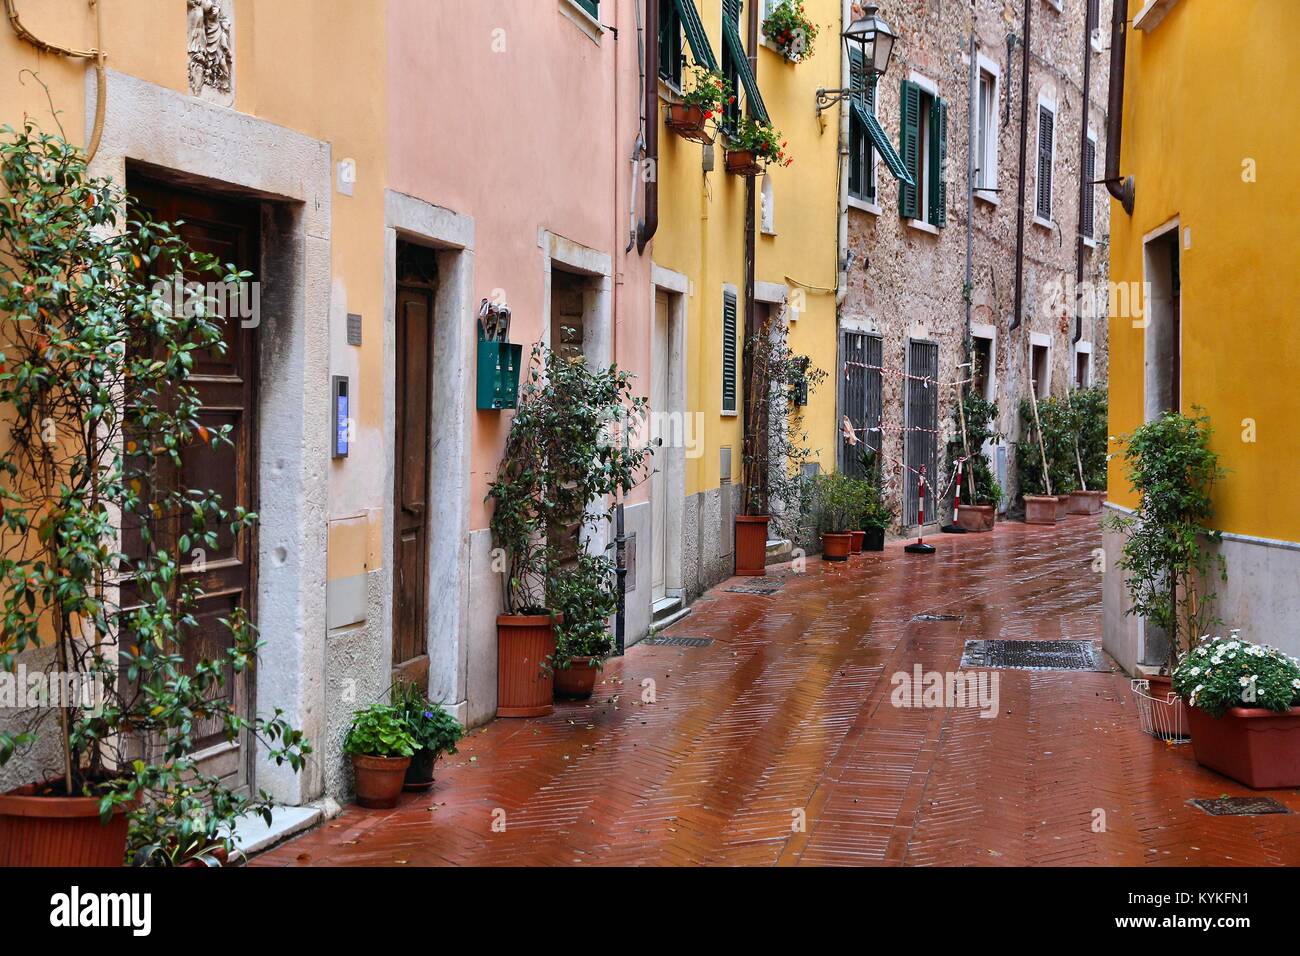 Carrara, Italy - Old Town in the region of Tuscany. Rainy street view. Stock Photo